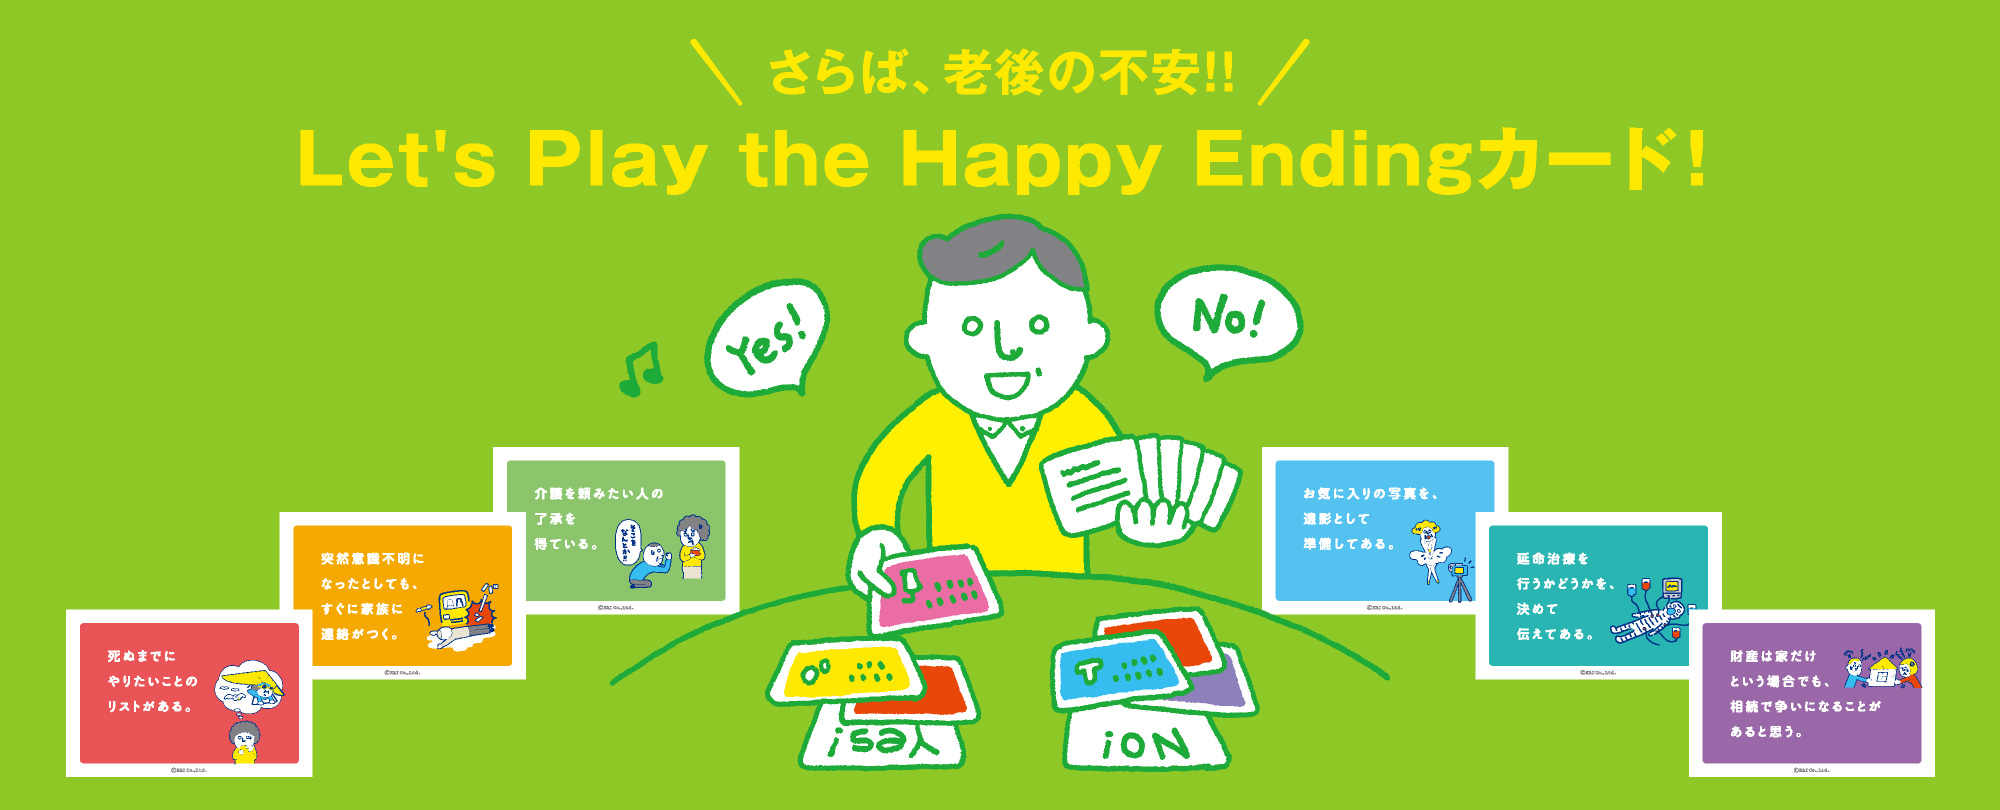 一般社団法人 日本Happy Ending協会